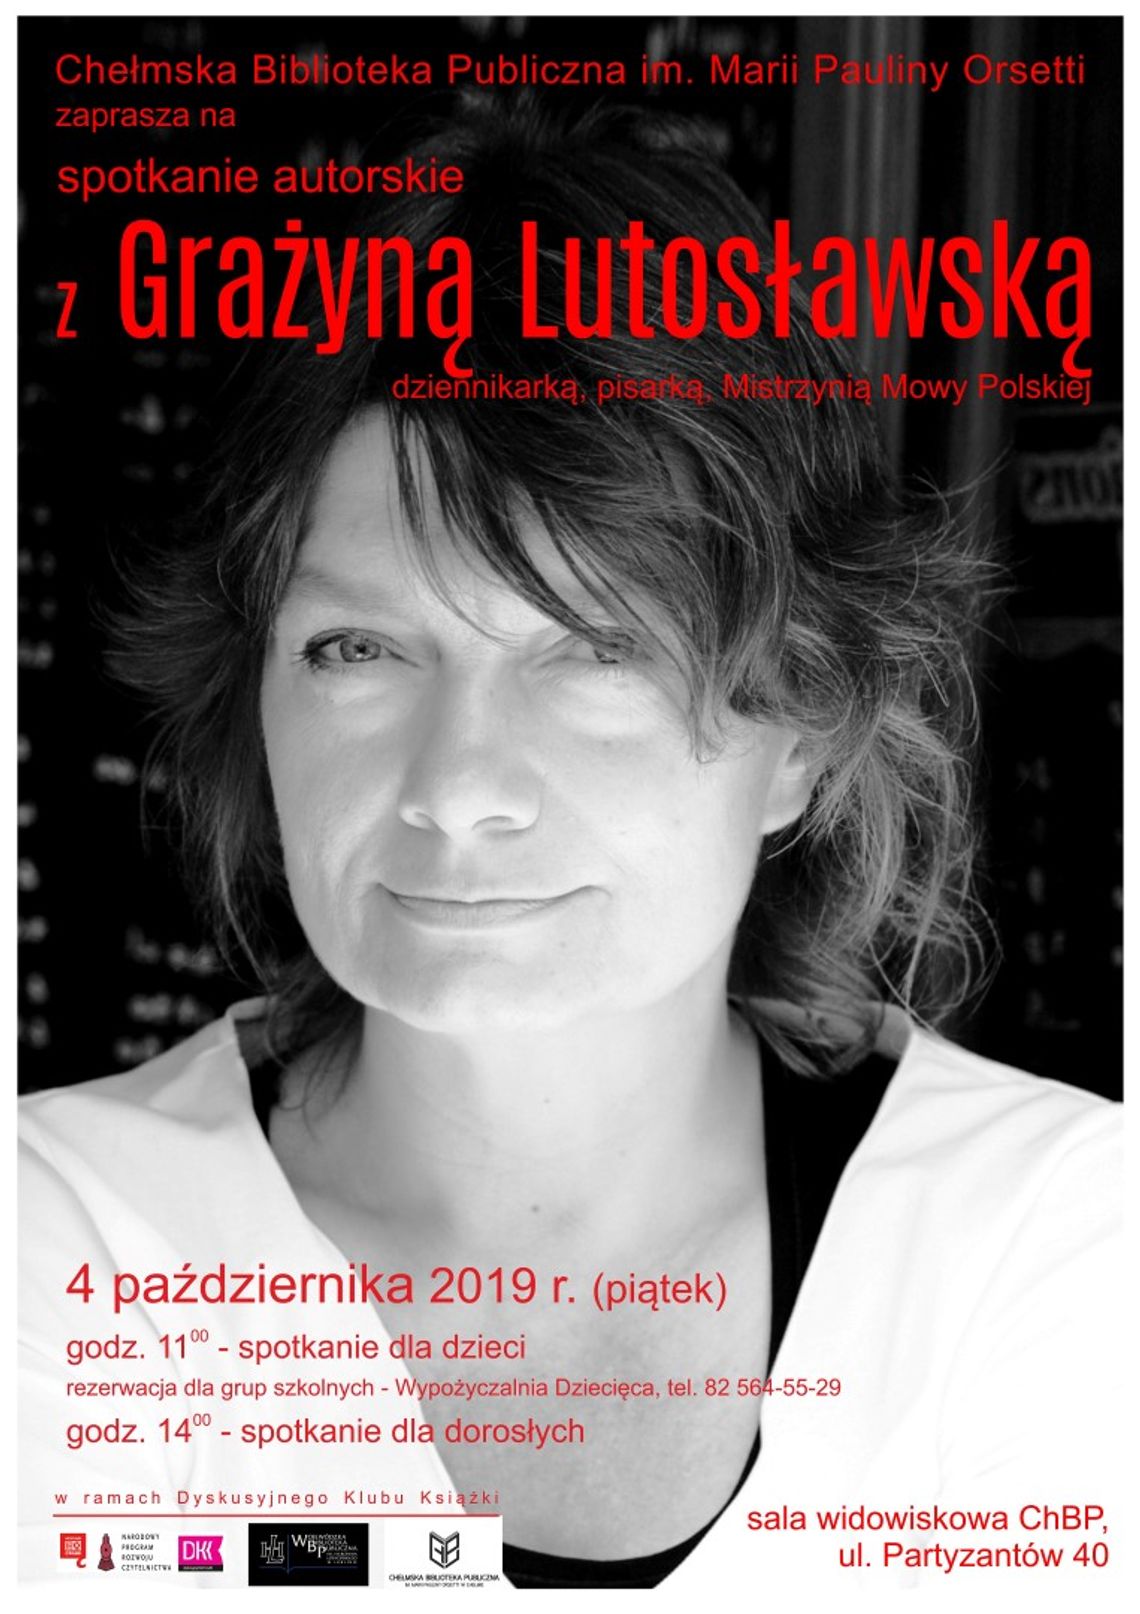 Chełmska Biblioteka Publiczna zaprasza na spotkania autorskie z Grażyną Lutosławską 